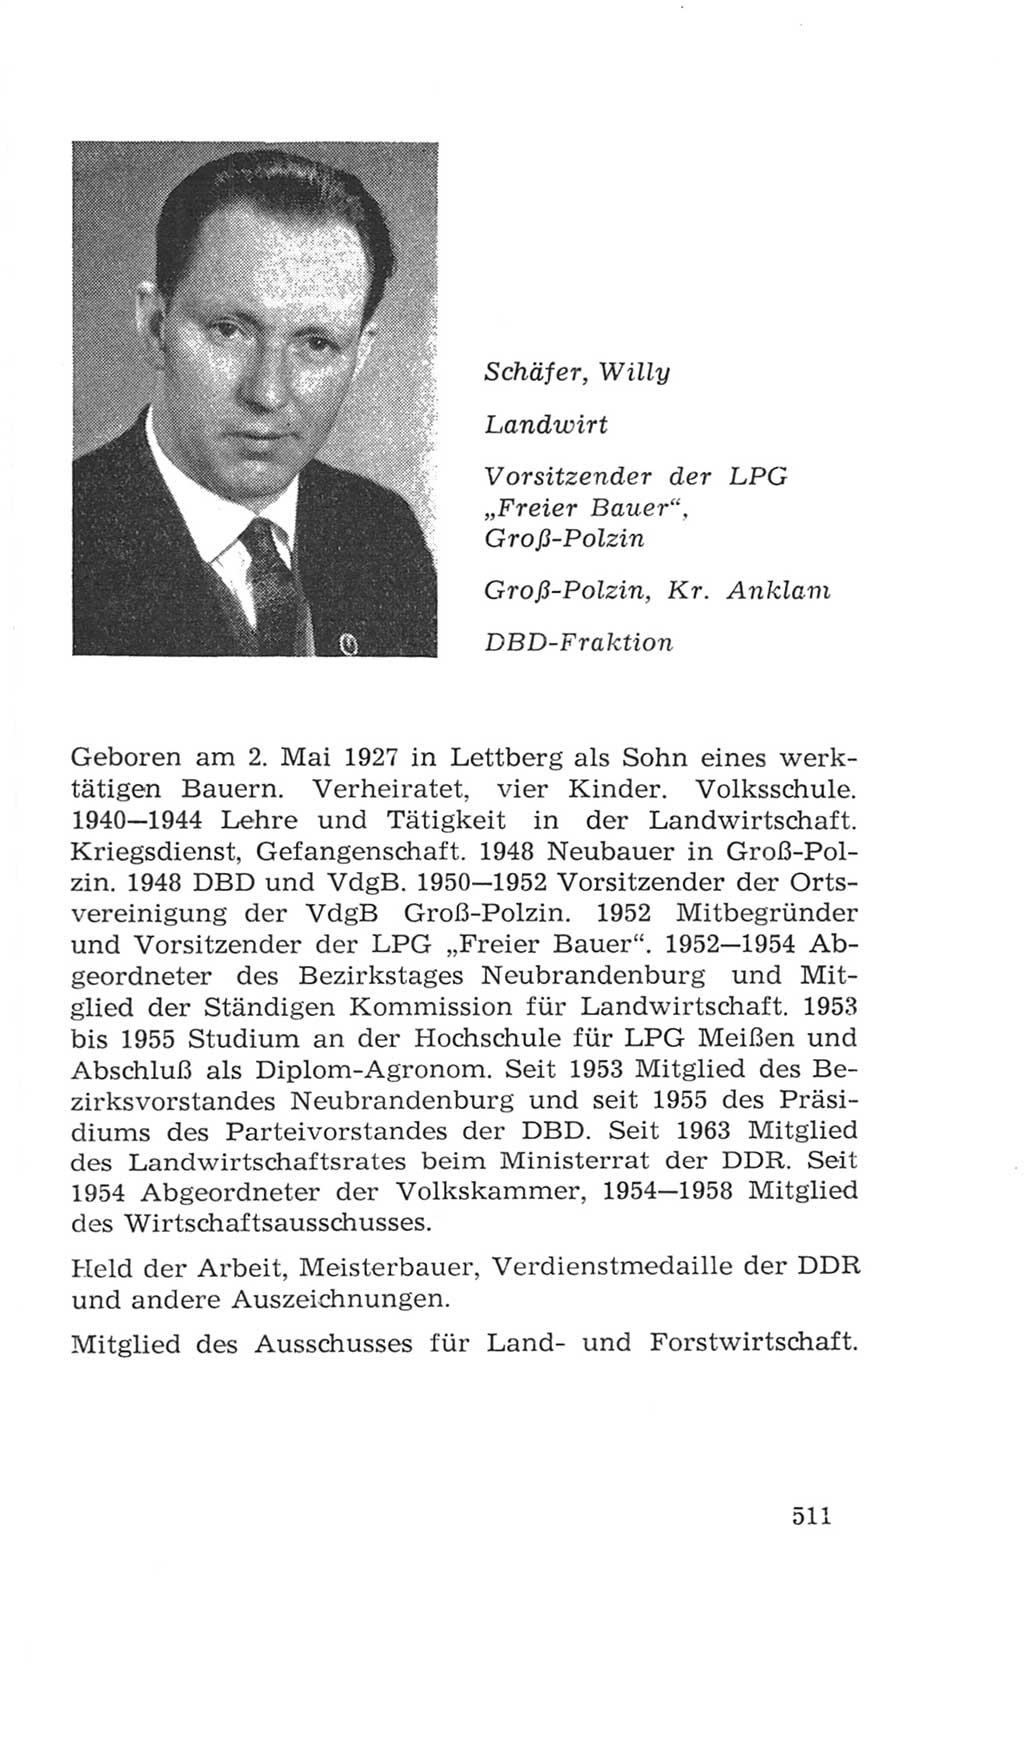 Volkskammer (VK) der Deutschen Demokratischen Republik (DDR), 4. Wahlperiode 1963-1967, Seite 511 (VK. DDR 4. WP. 1963-1967, S. 511)